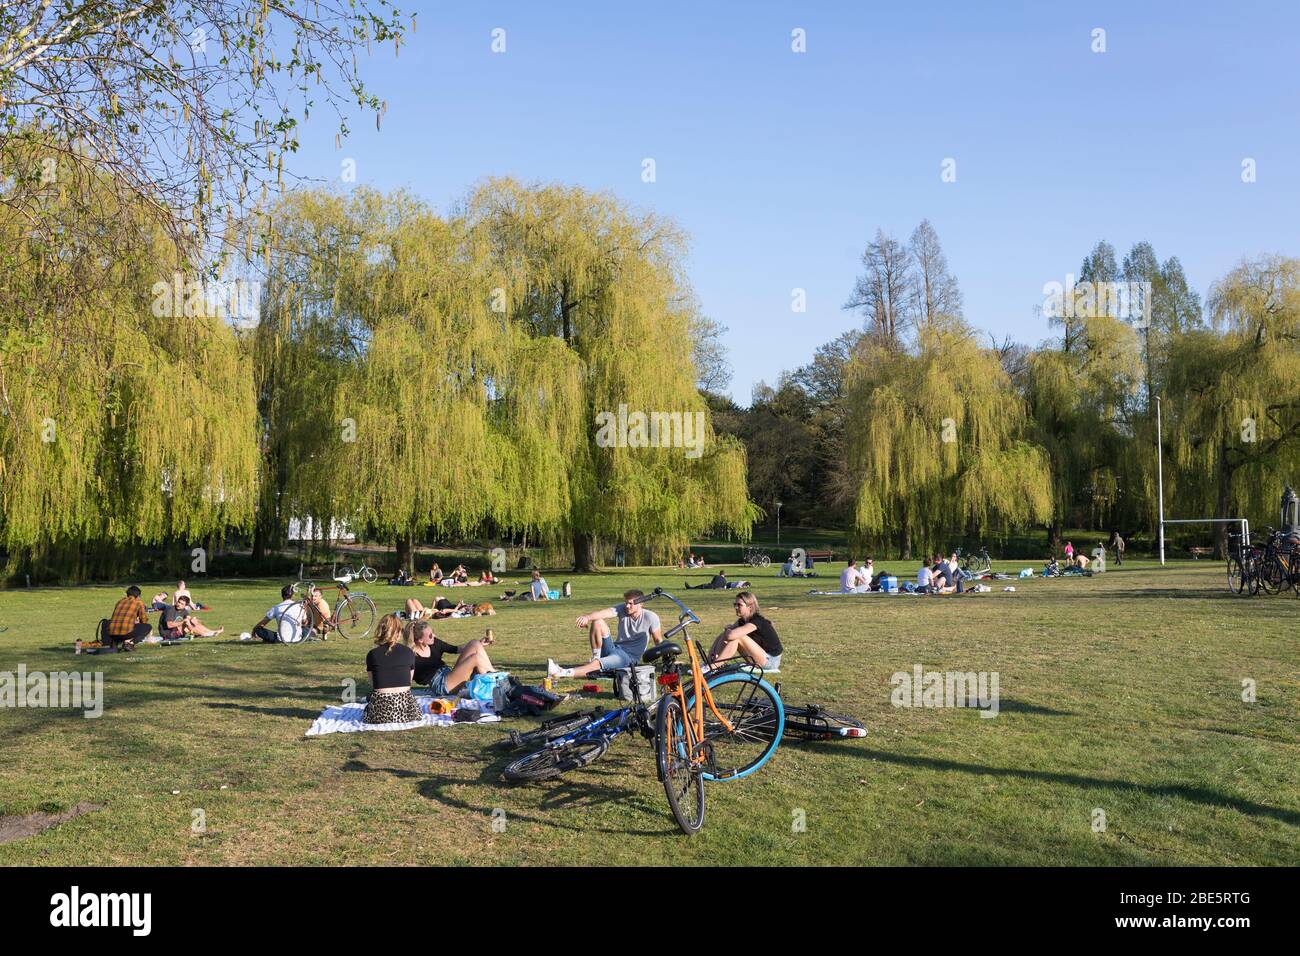 Persone che godono di una giornata di sole in un parco cittadino che soggiornano a una distanza sociale sicura a causa della crisi di Corona, Eindhoven, Paesi Bassi Foto Stock